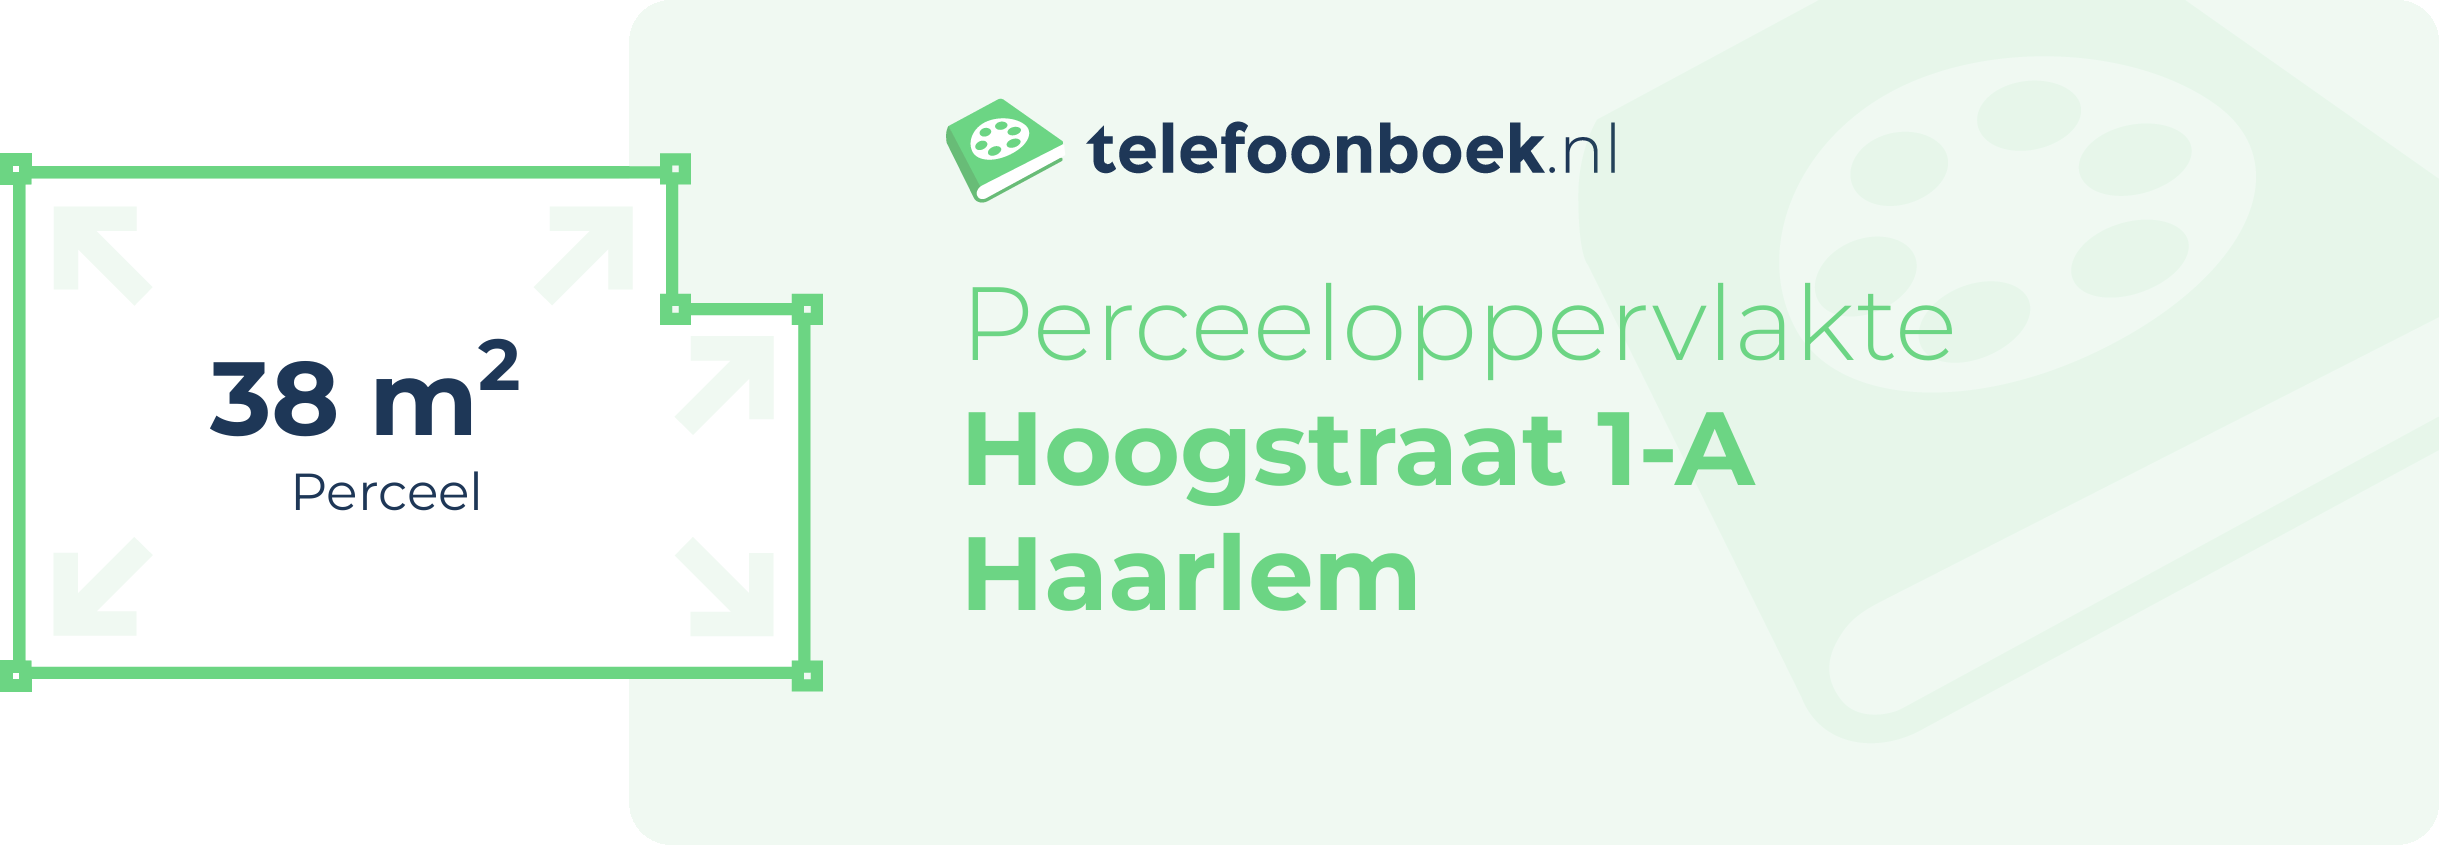 Perceeloppervlakte Hoogstraat 1-A Haarlem